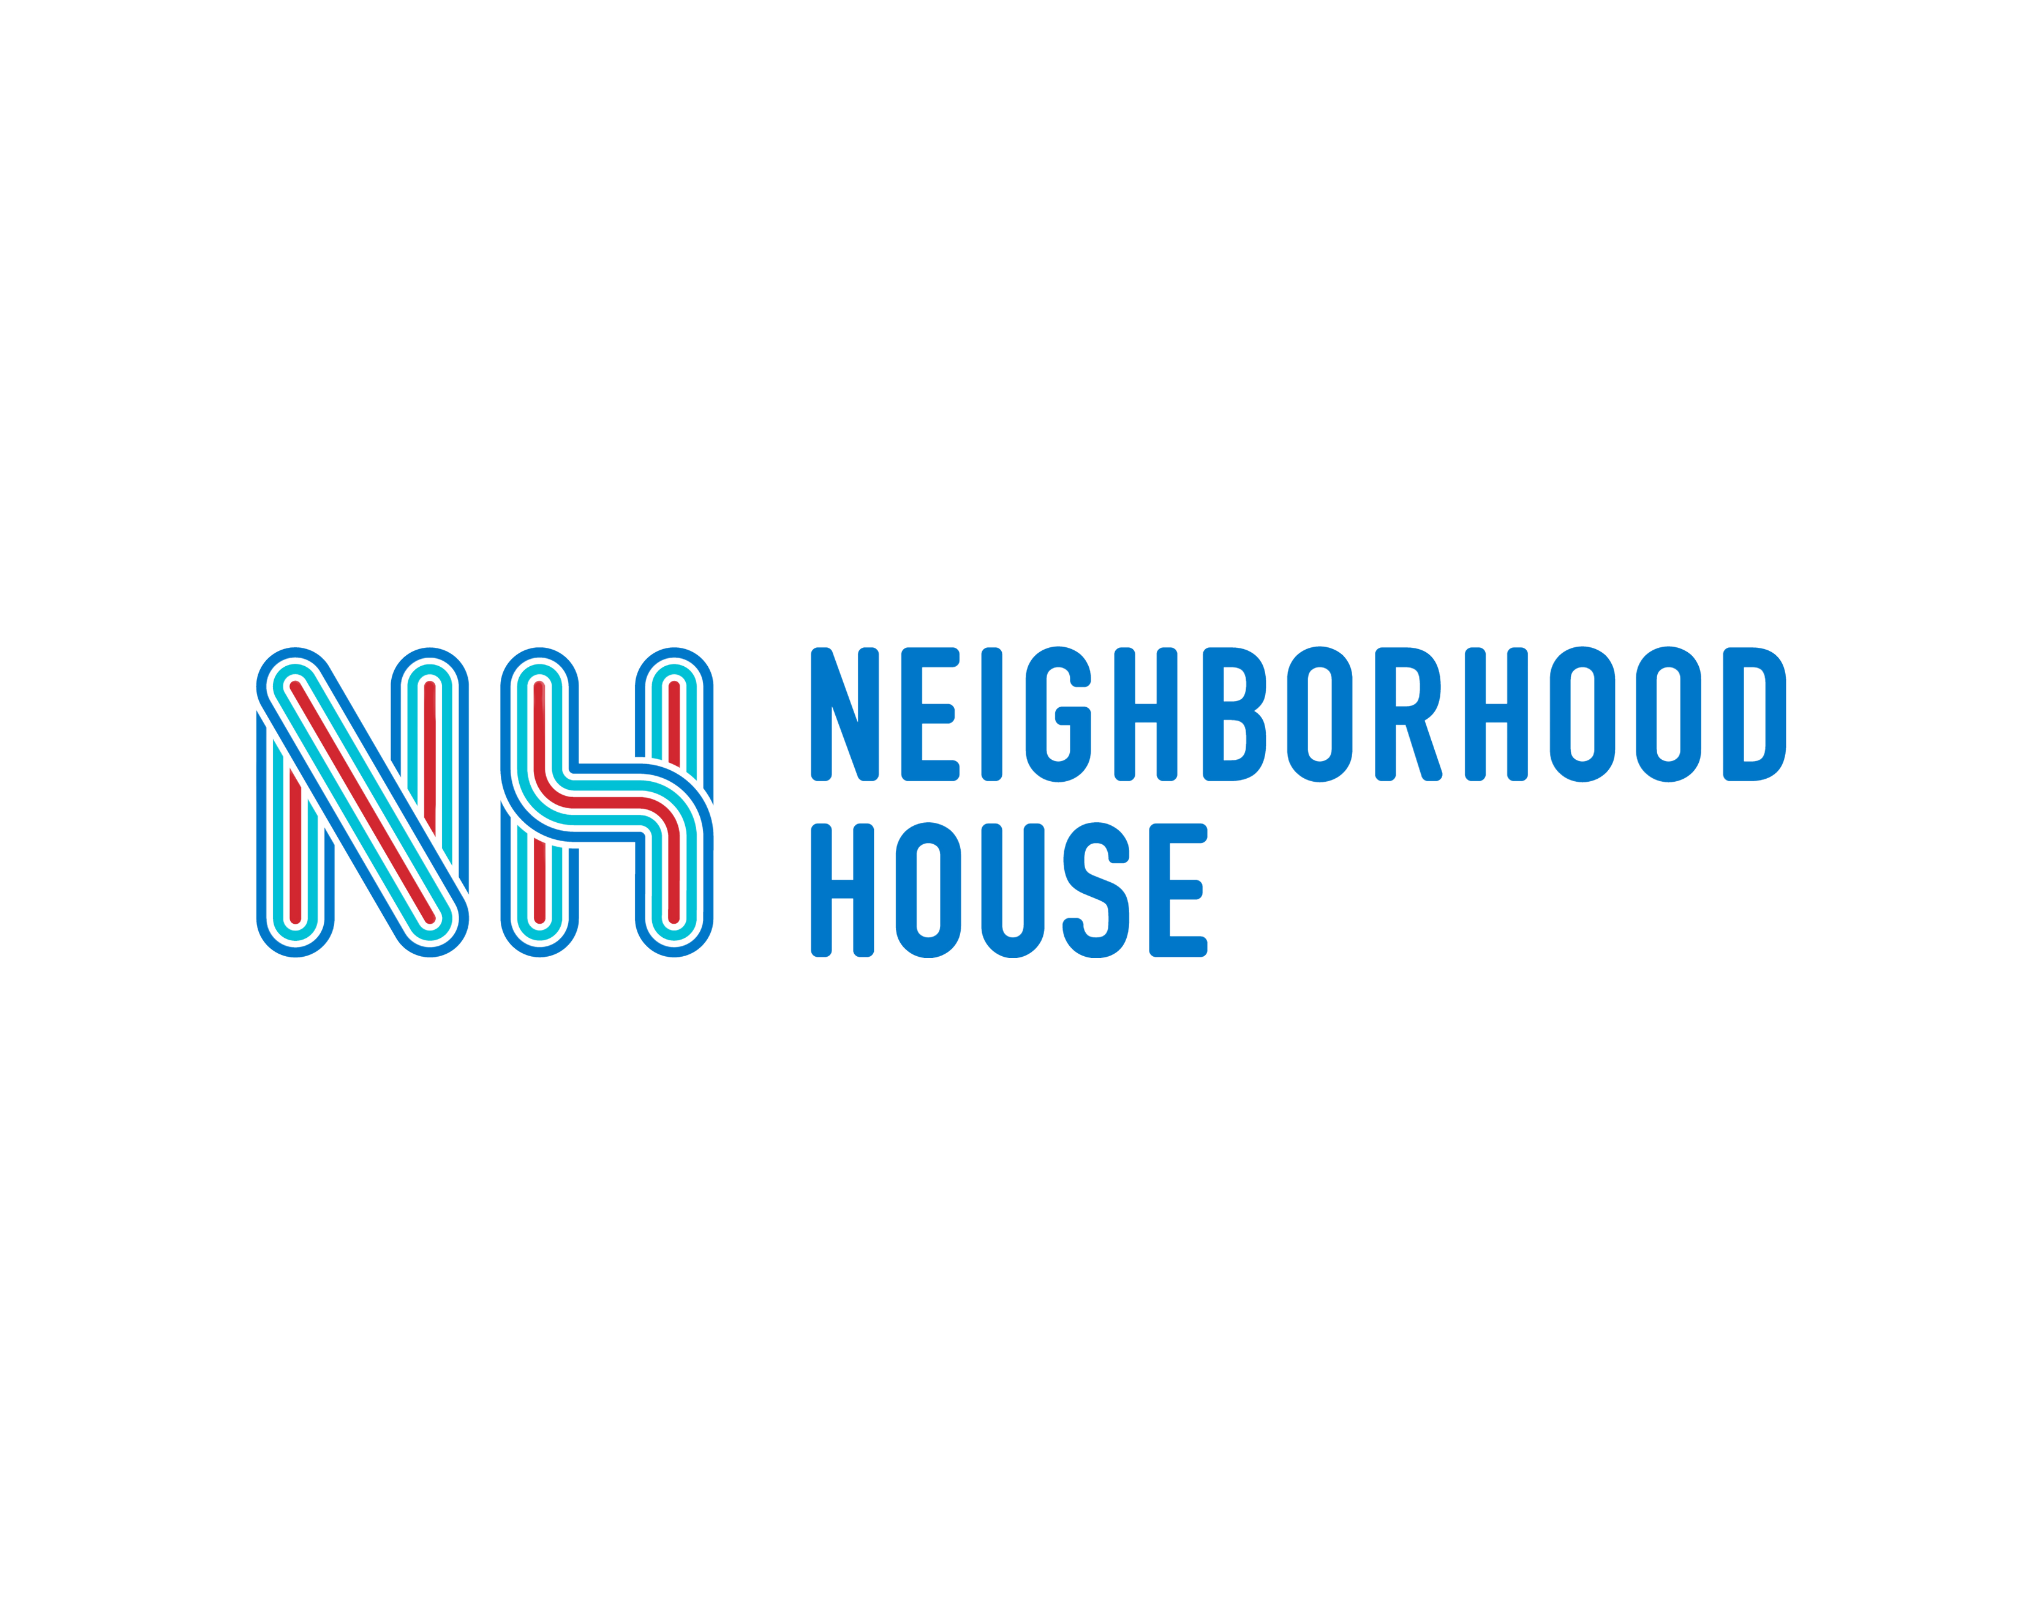 Neighborhood House